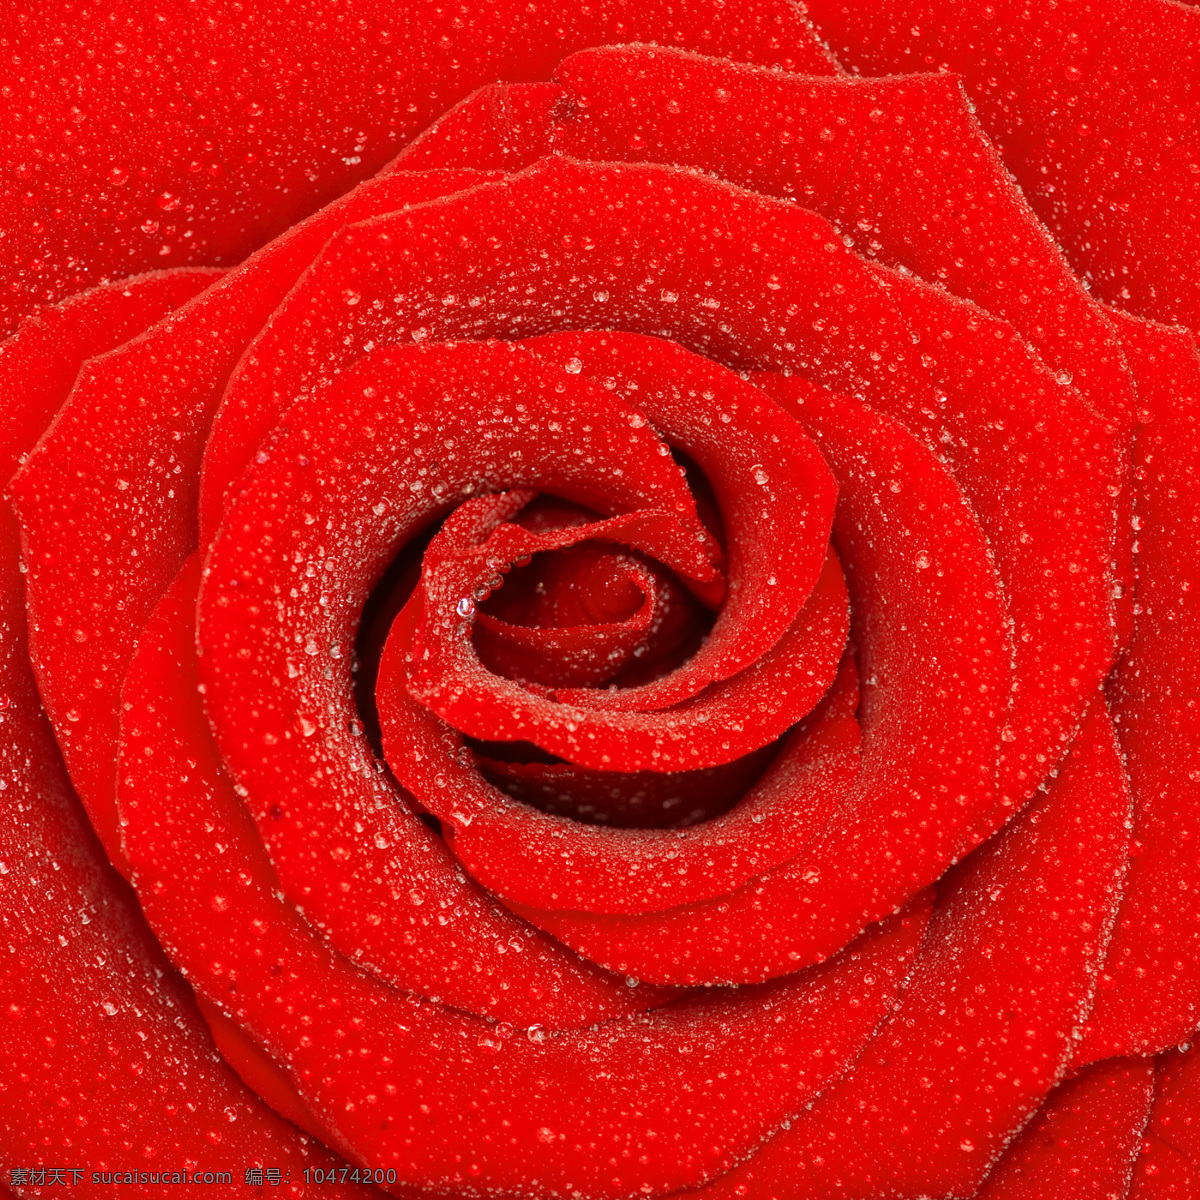 红玫瑰 玫瑰 玫瑰花 玫瑰花背景 rose 高清图片 水珠 花草树木 生物世界